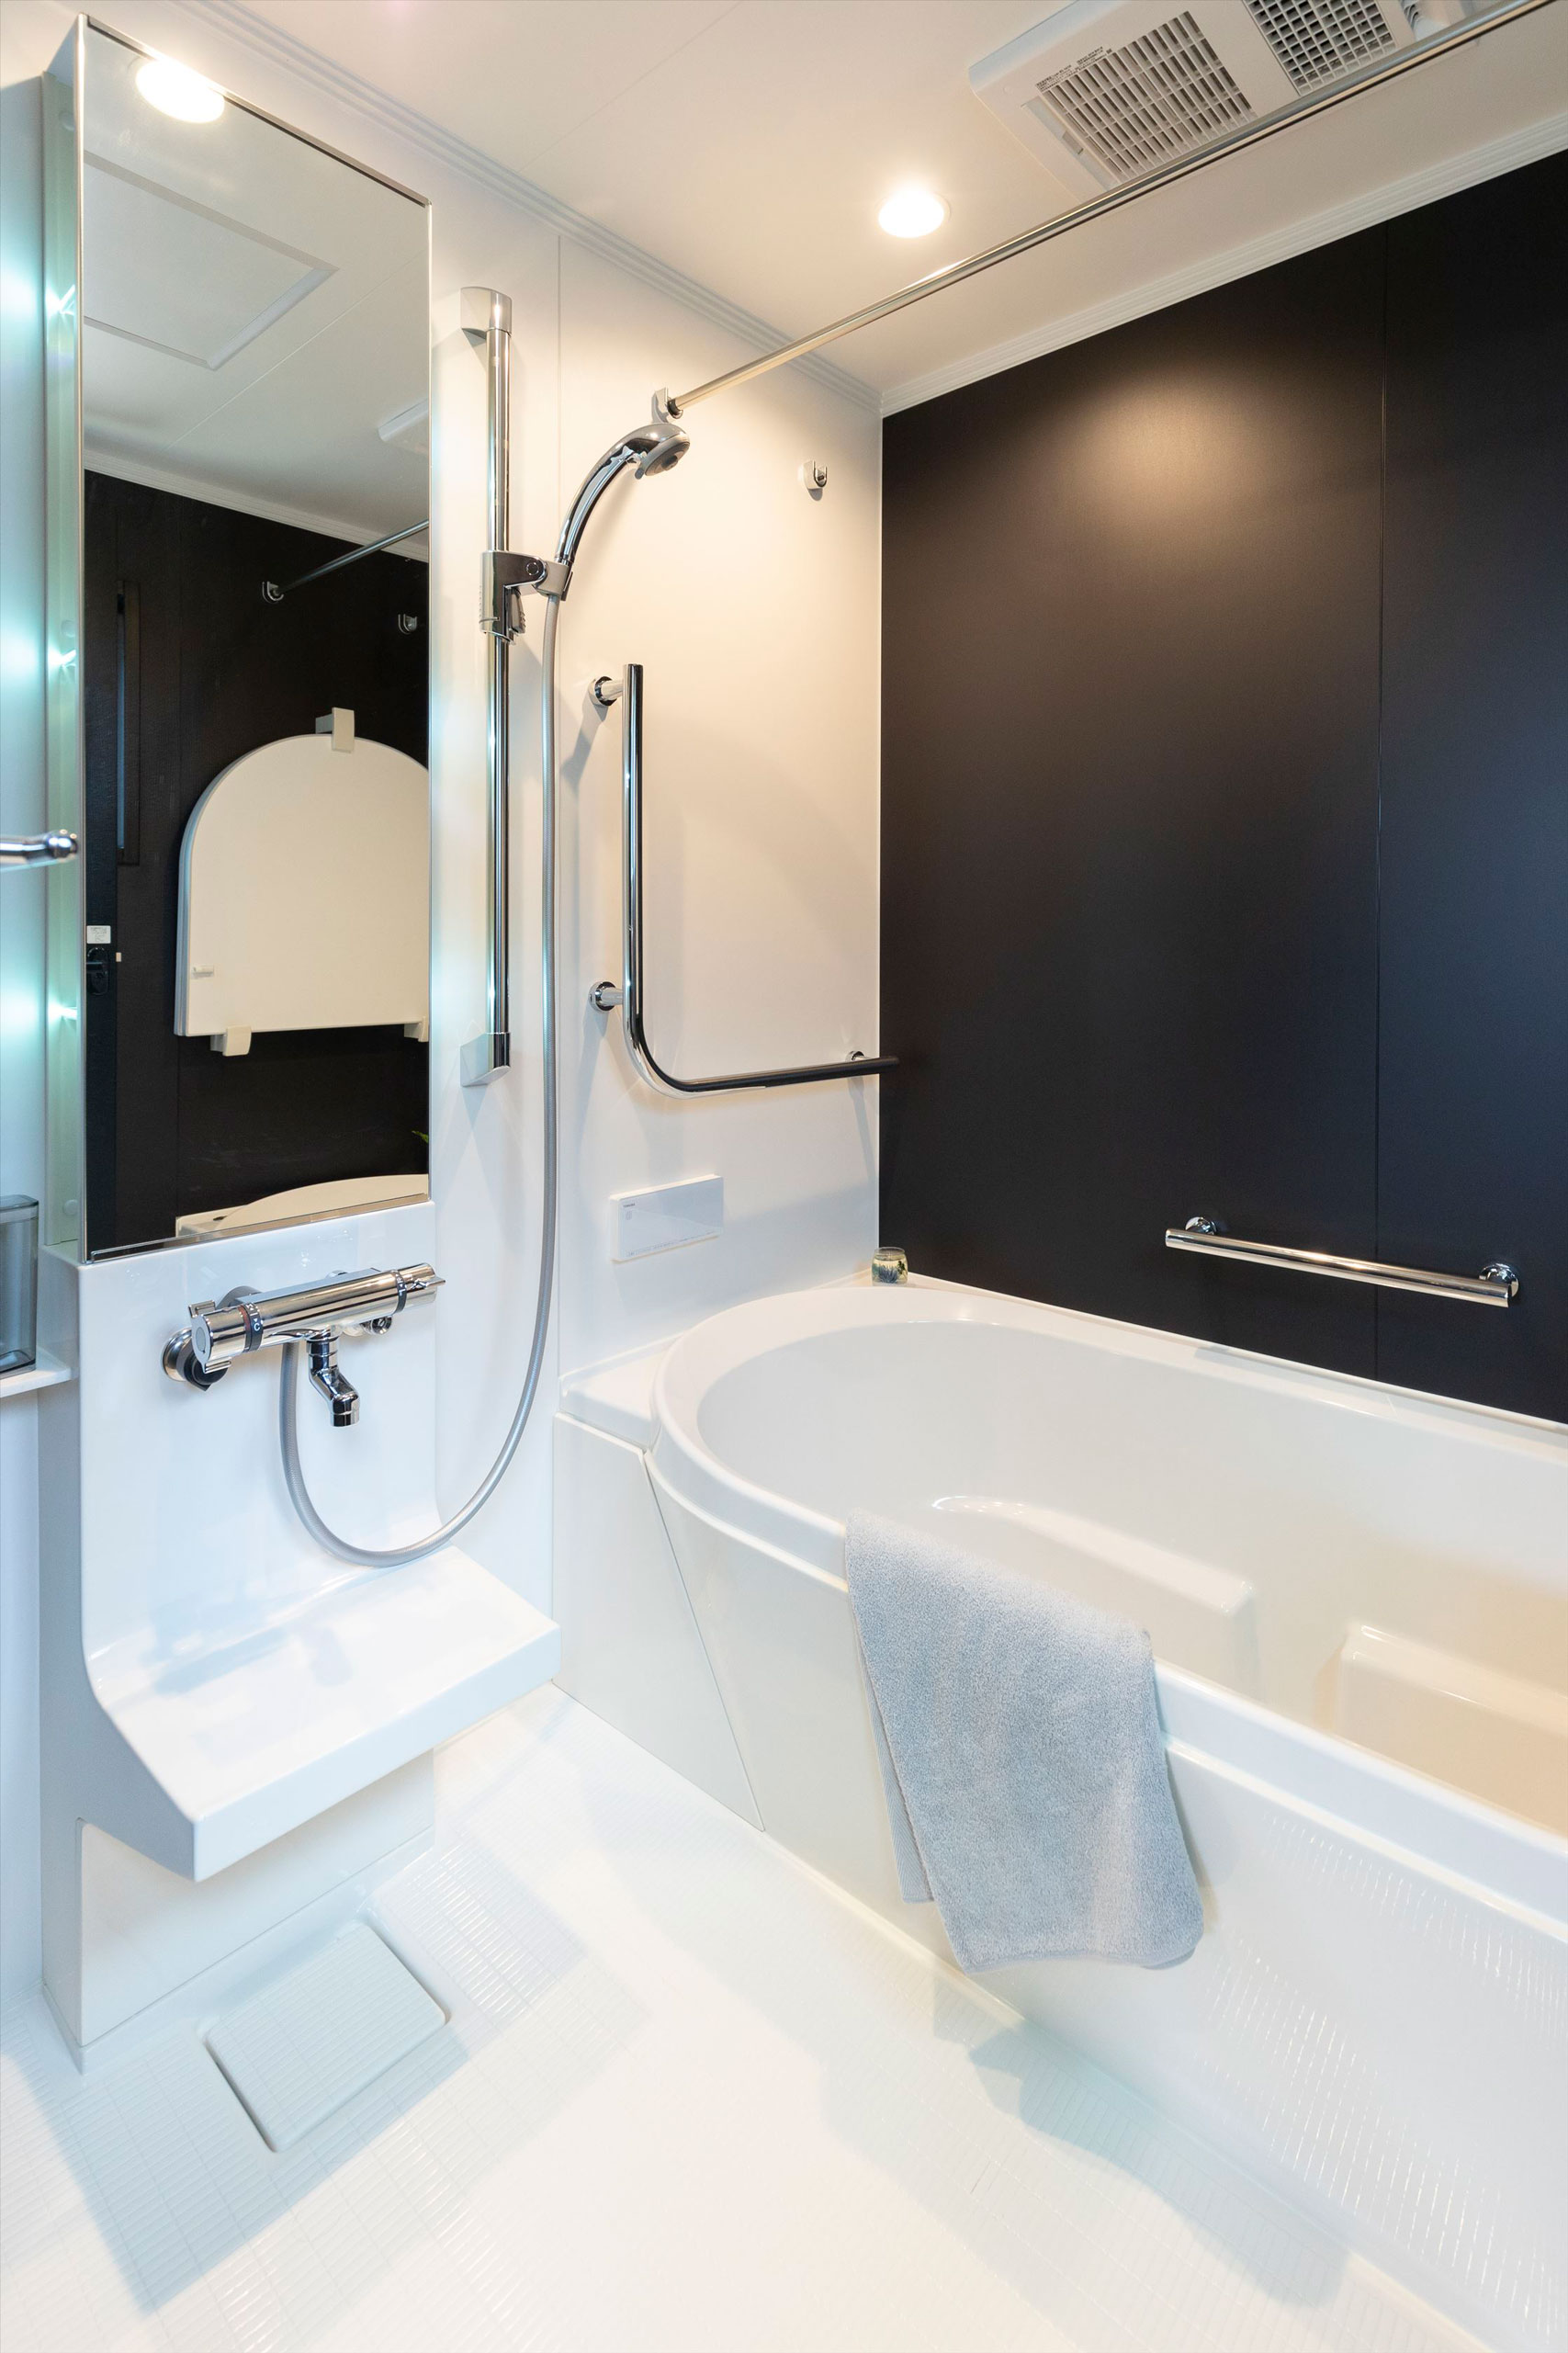 デザイン性の高いユニットバス浴室